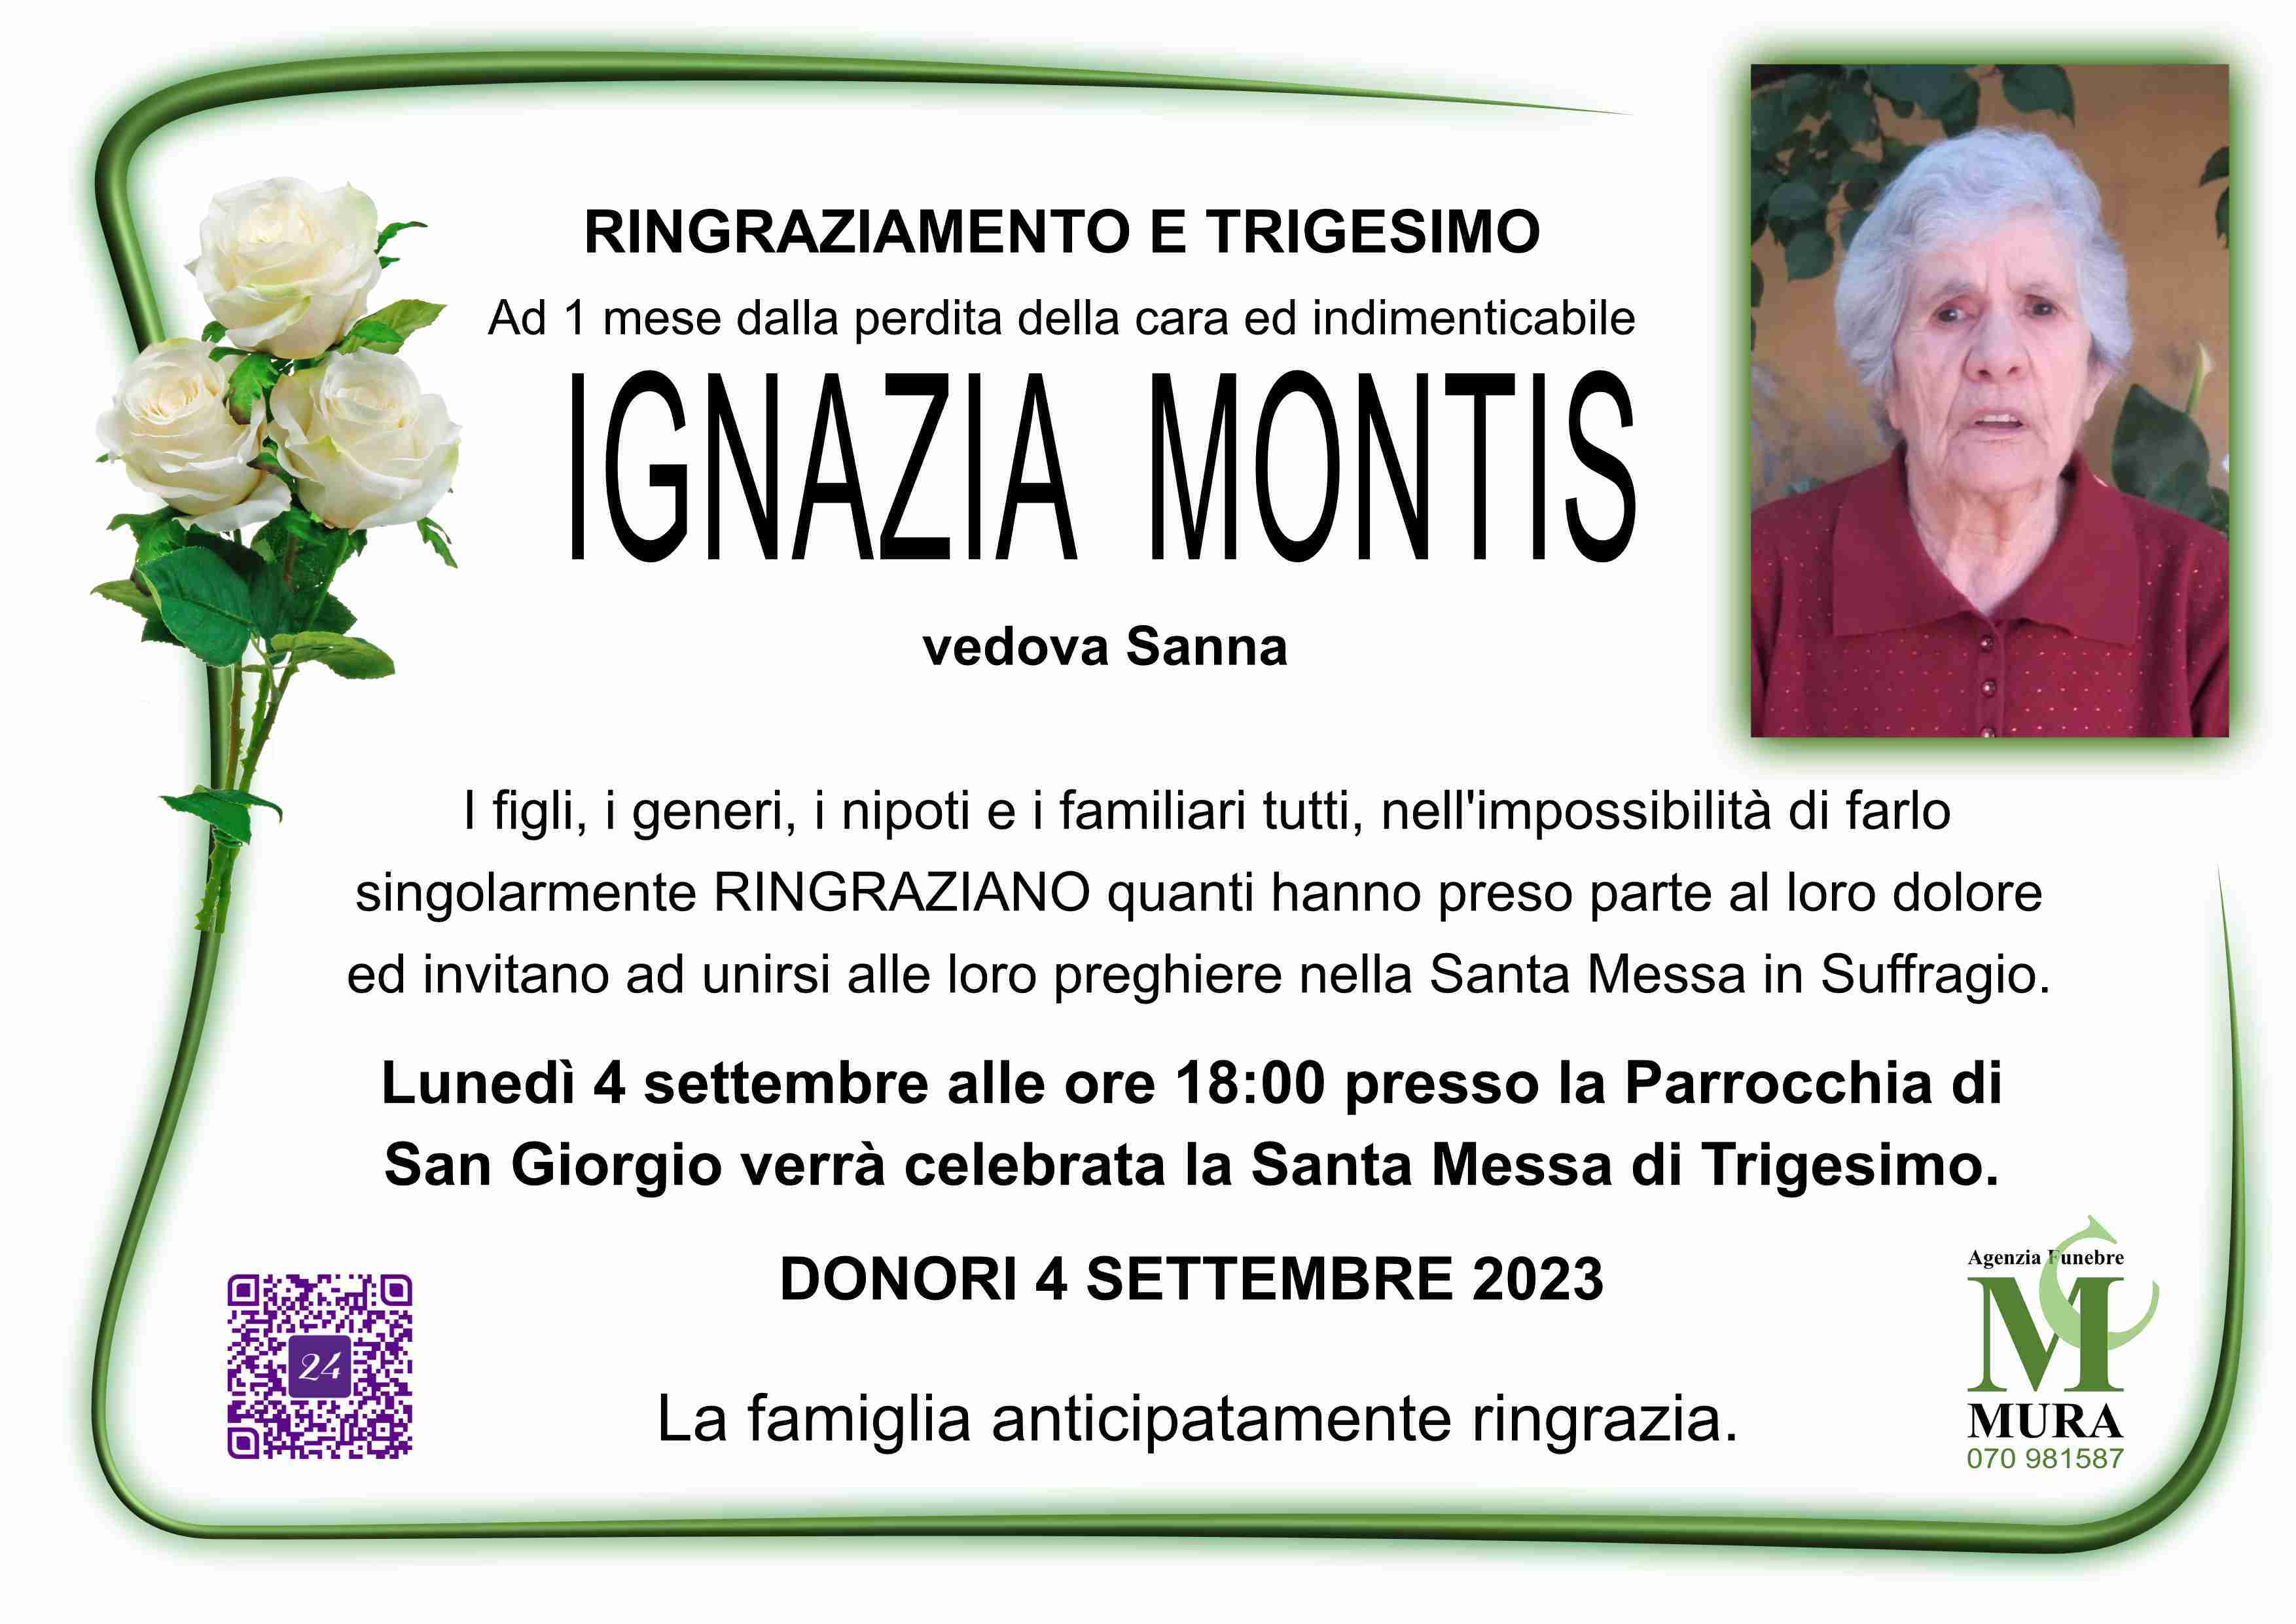 Ignazia Montis